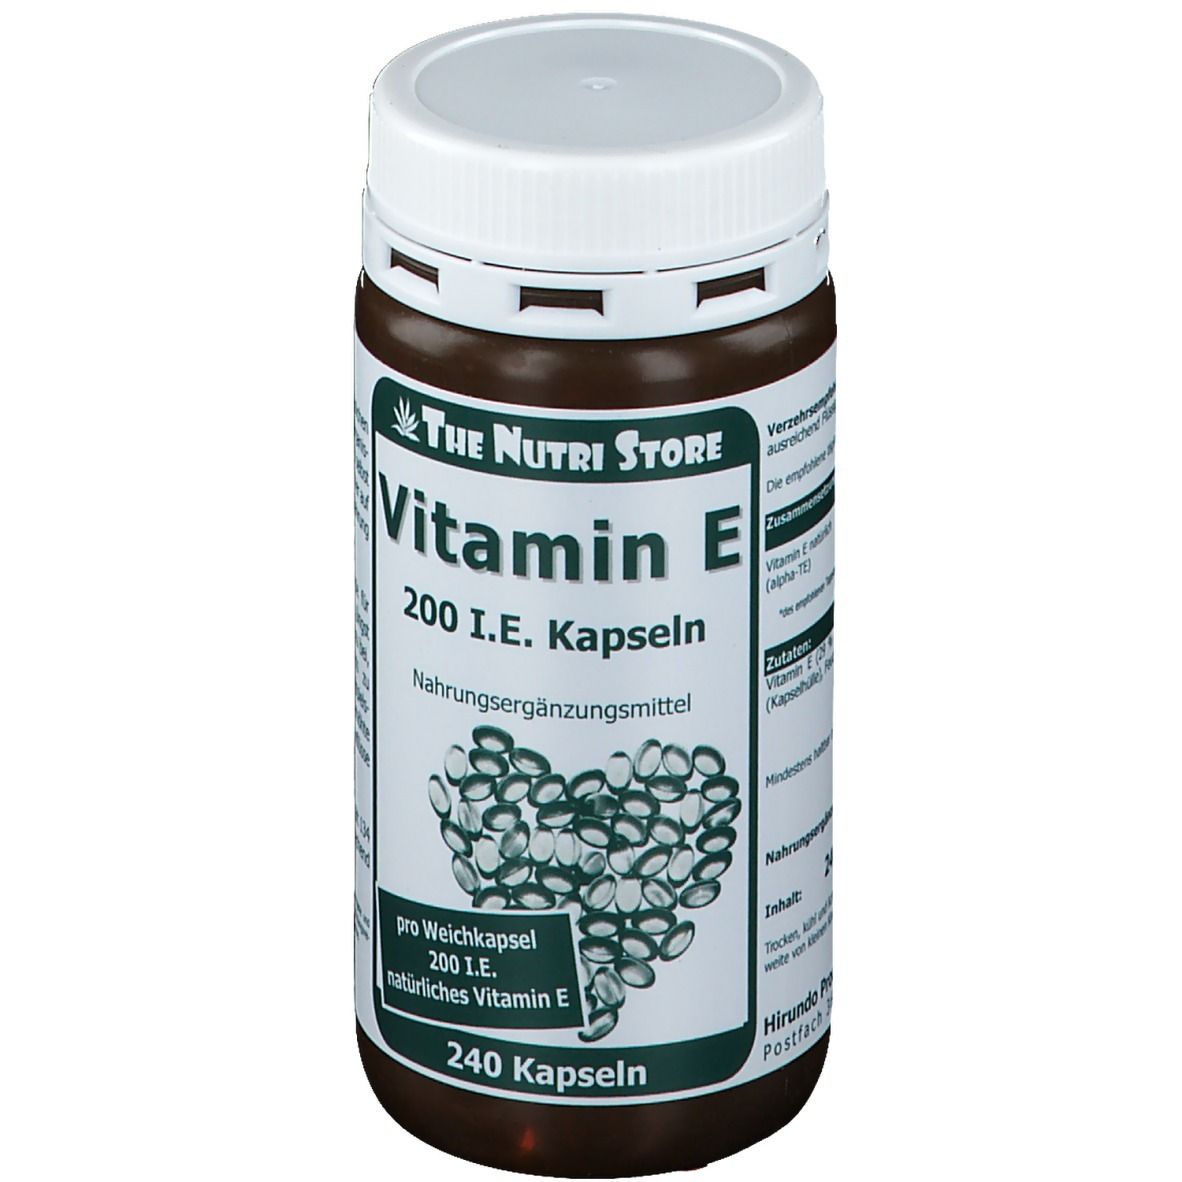 Vitamin E 200 I.E.